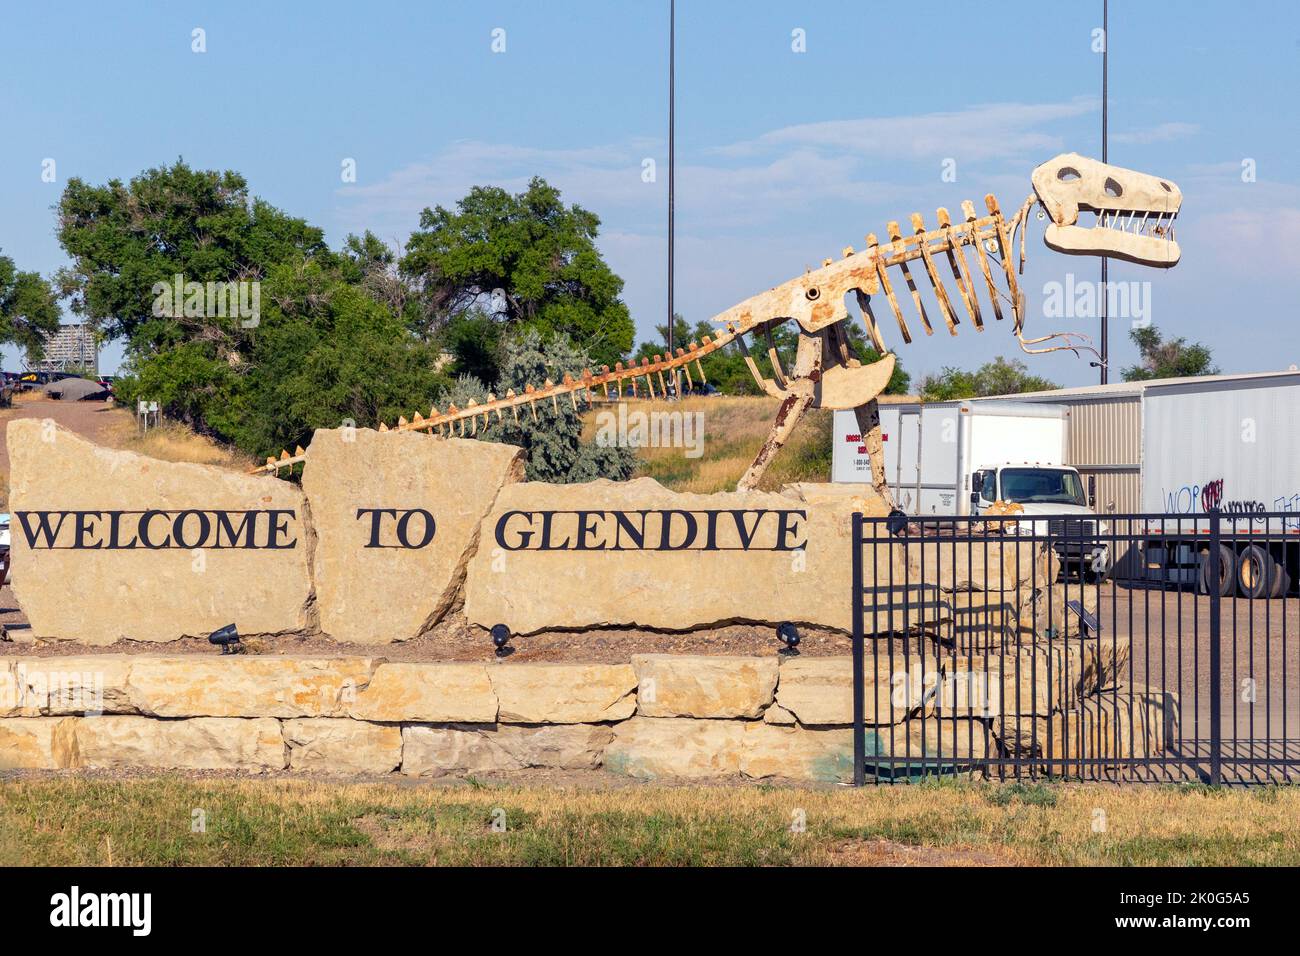 Roadway Bienvenido al cartel de Glendive con la escultura metálica de un dinosaurio en Glendive, Montana. La escultura es un homenaje a los huesos de muchos dinosaurios fo Foto de stock